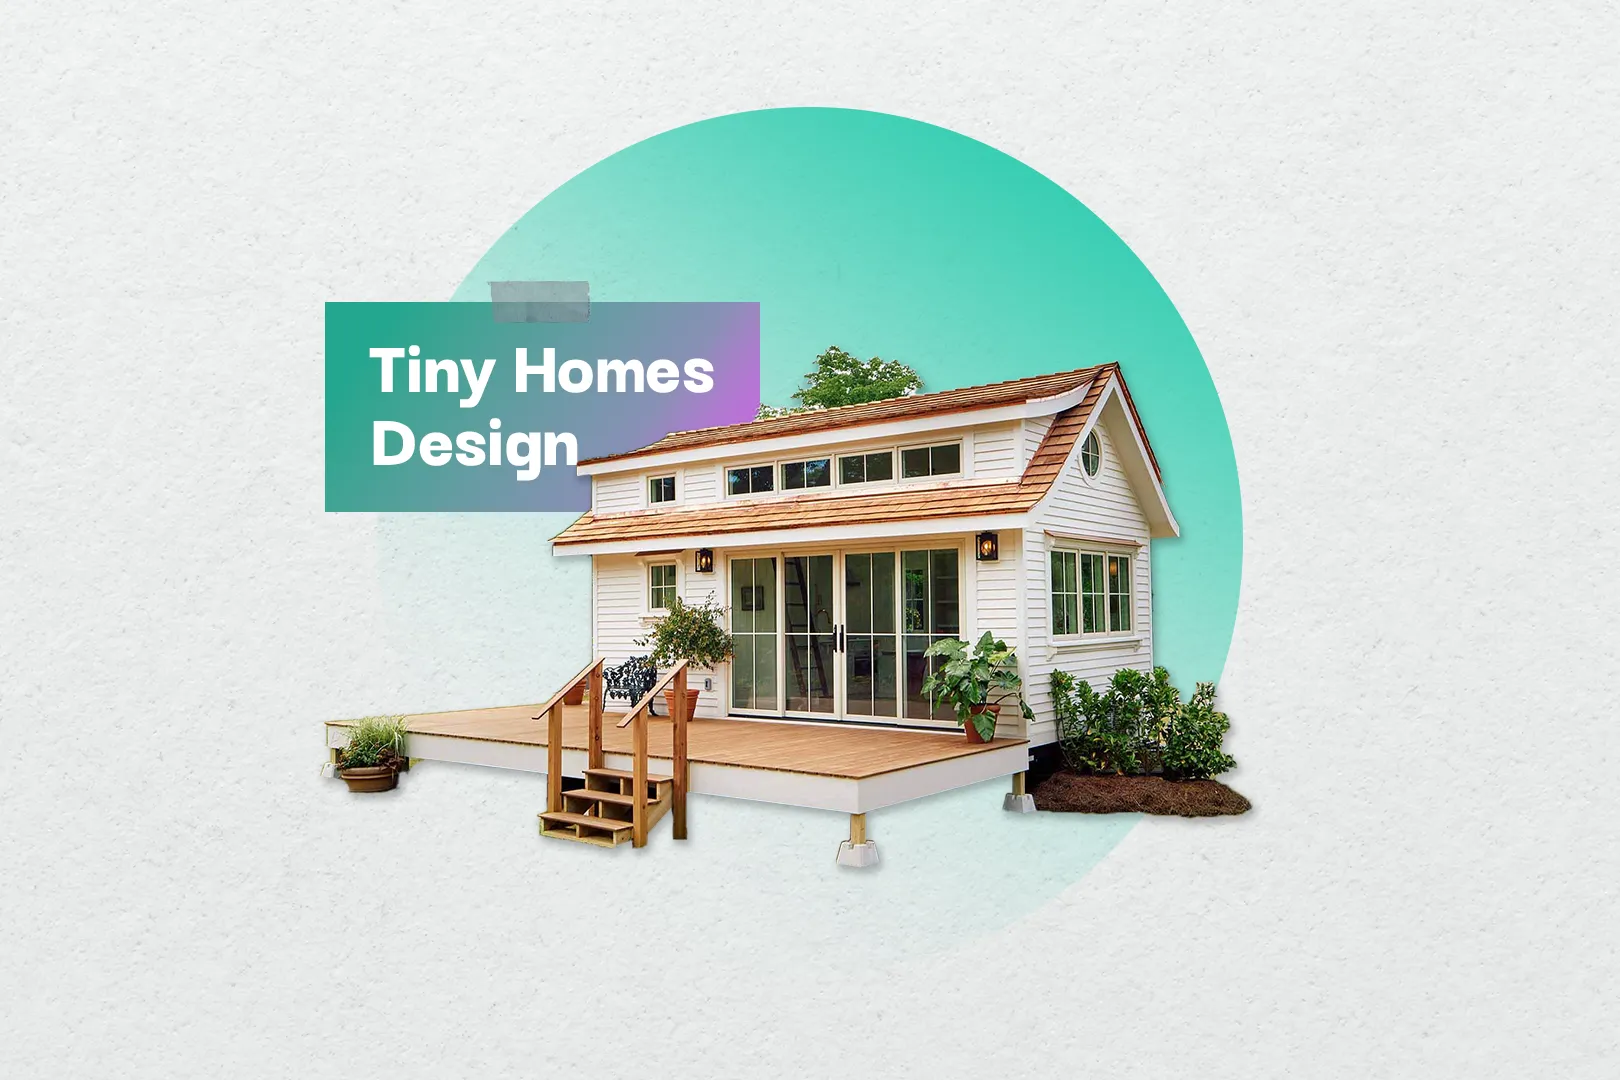 Tiny Homes Design